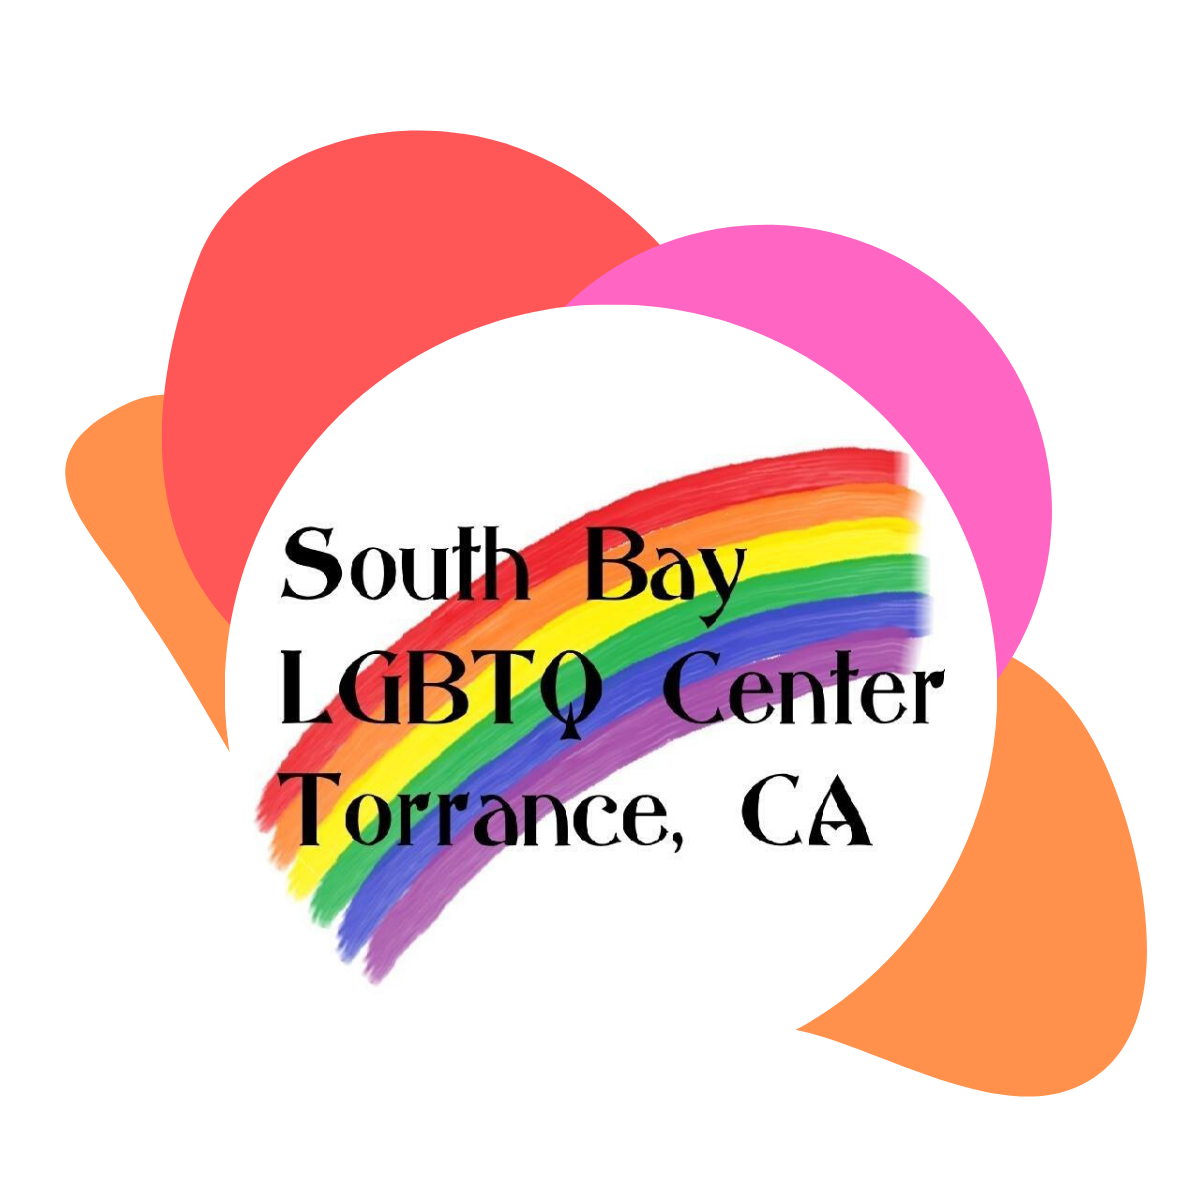 LGBTQ Organization in San Diego California - South Bay LGBTQ Center